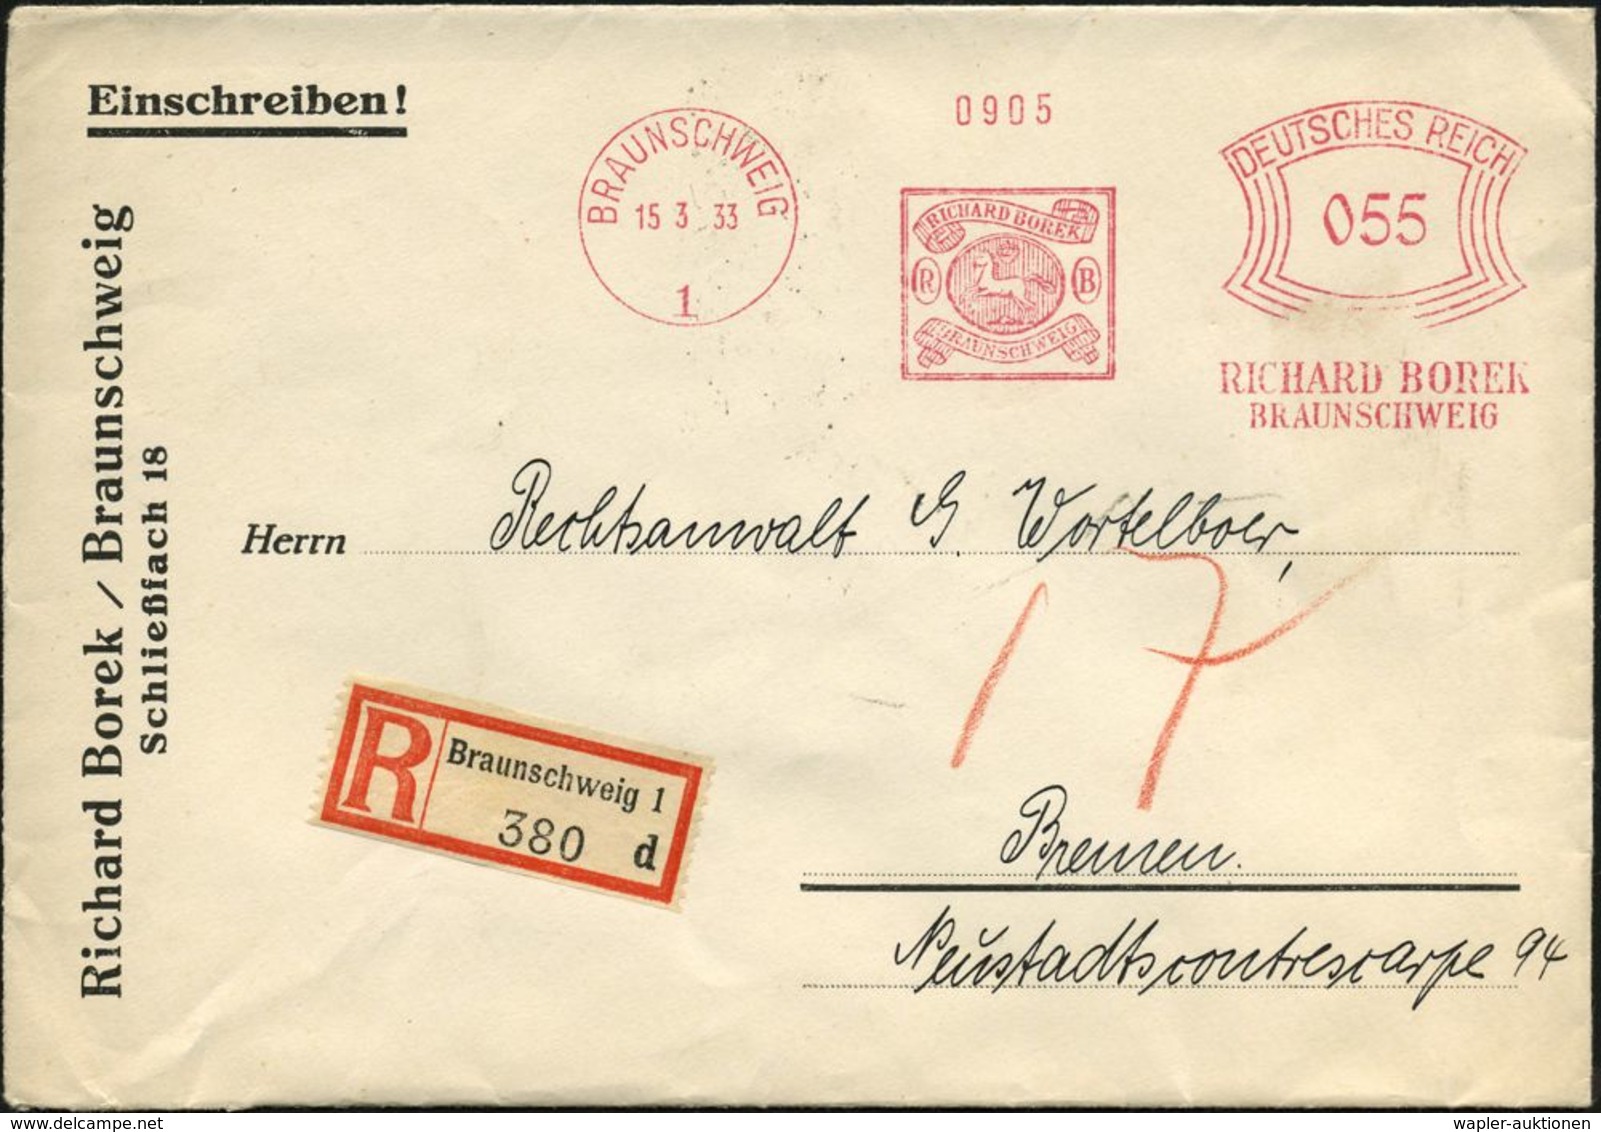 BRAUNSCHWEIG/ 1/ RICHARD BOREK 1933 (15.3.) AFS 055 Pf. = Alt-Braunschweig-Marke (mit Pferd) + Selbstbucher-RZ: Braunsch - Francobolli Su Francobolli